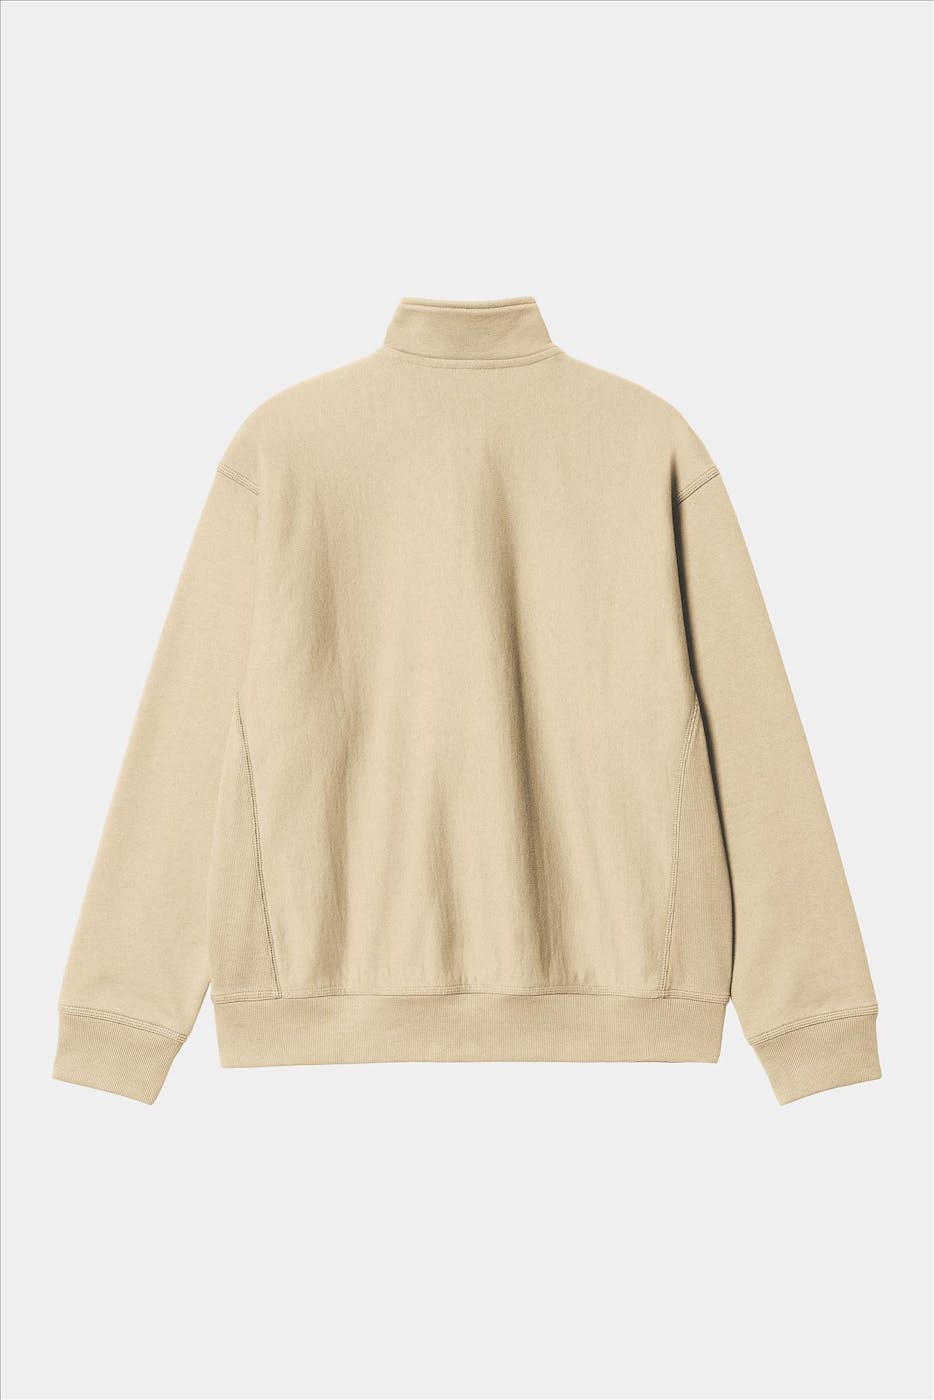 Carhartt WIP - Beige Half Zip American Script sweater